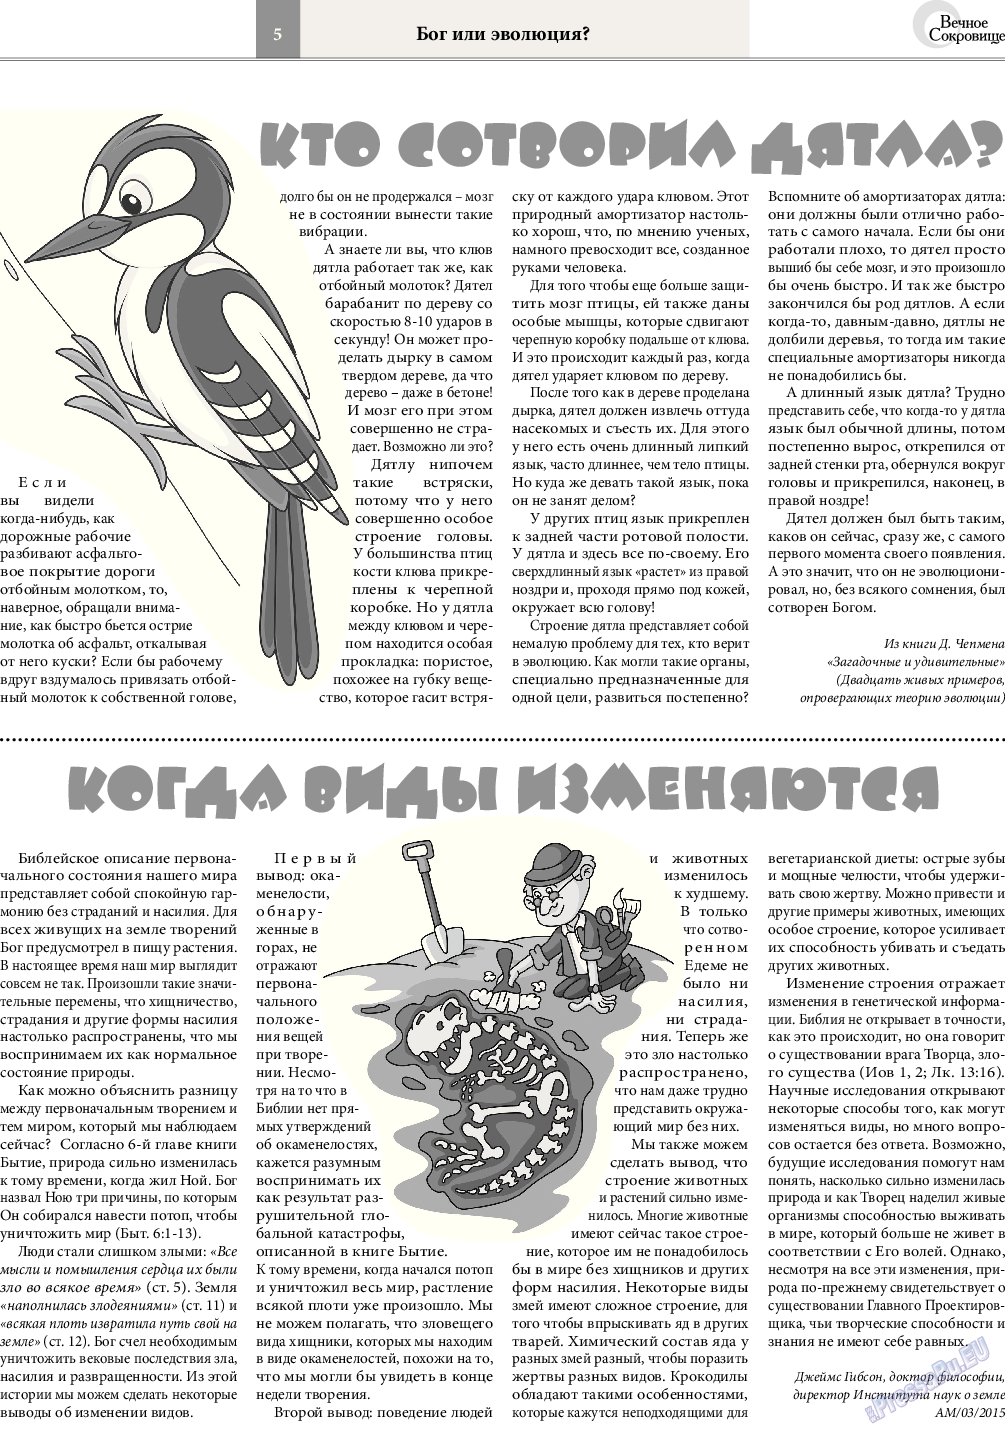 Вечное сокровище, газета. 2015 №4 стр.5